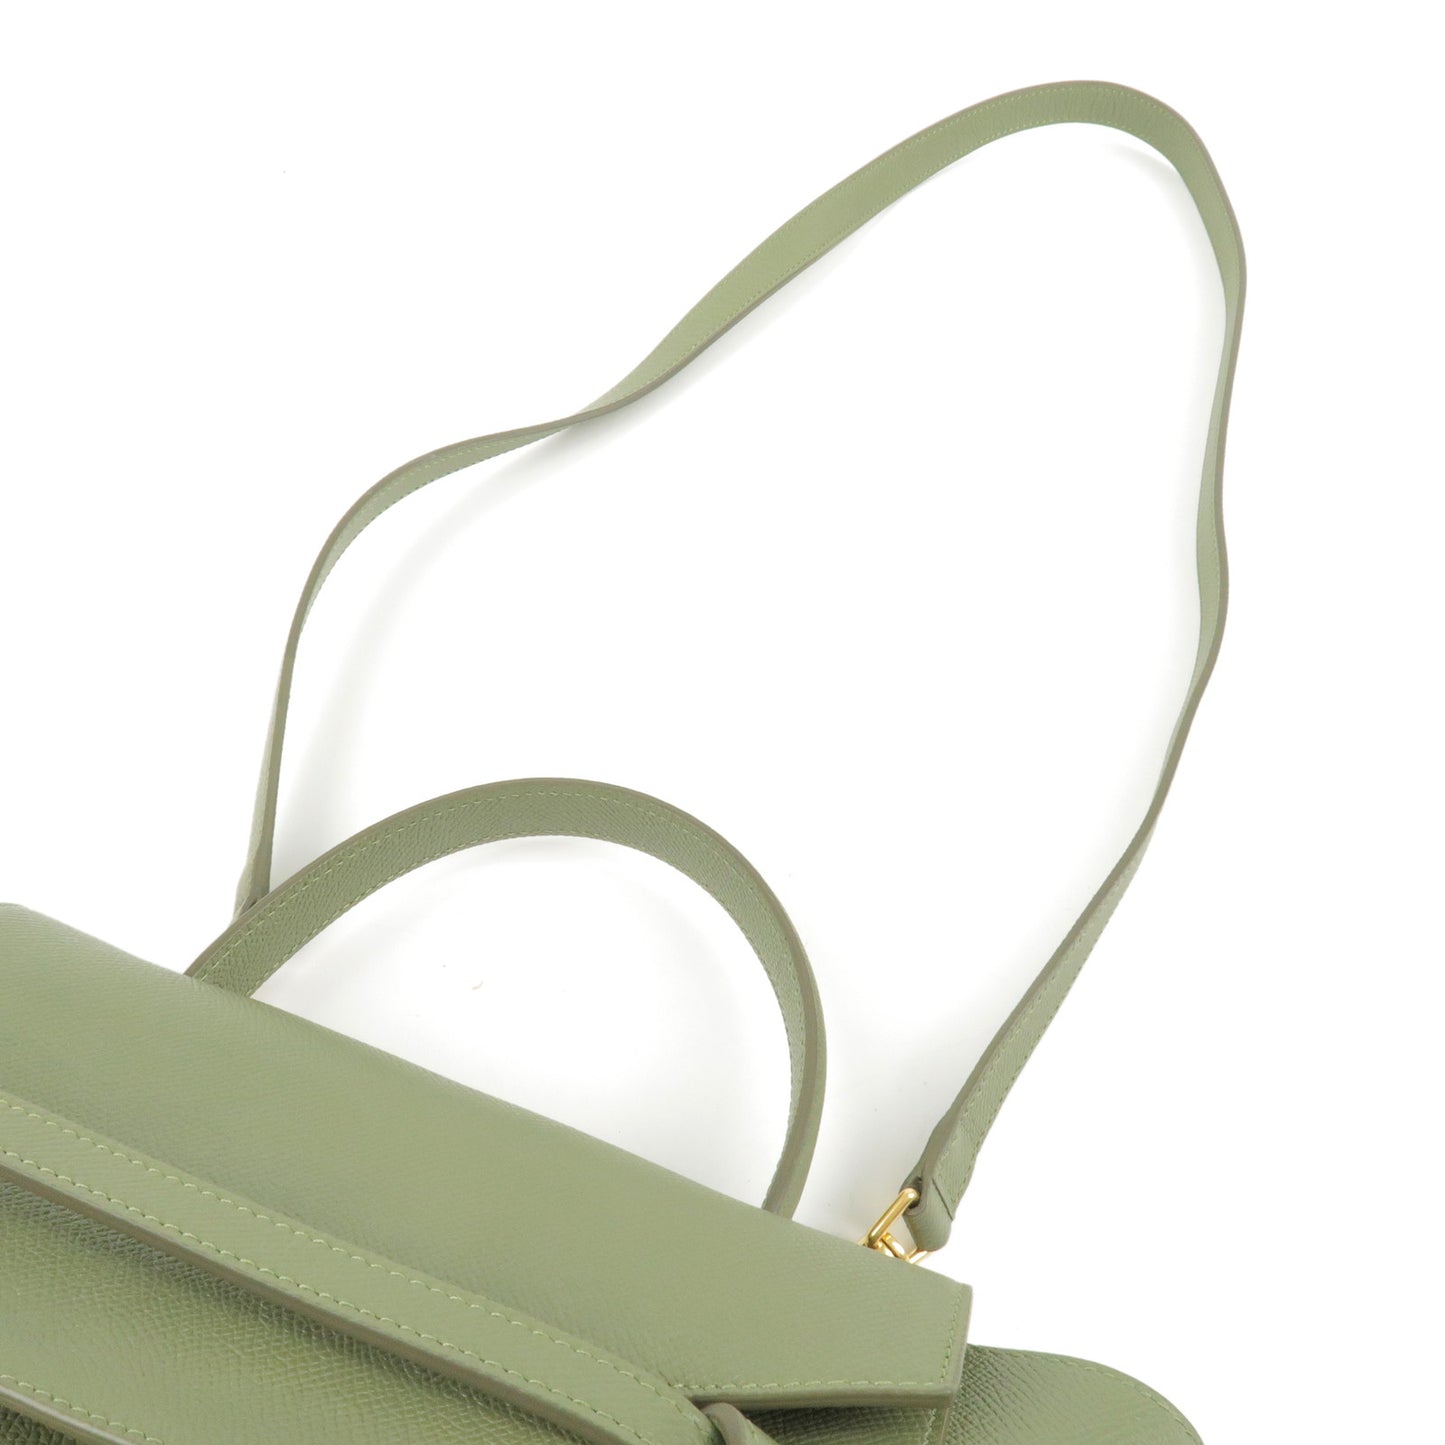 CELINE Leather Micro Belt Bag 2Way Shoulder Bag Green 189153